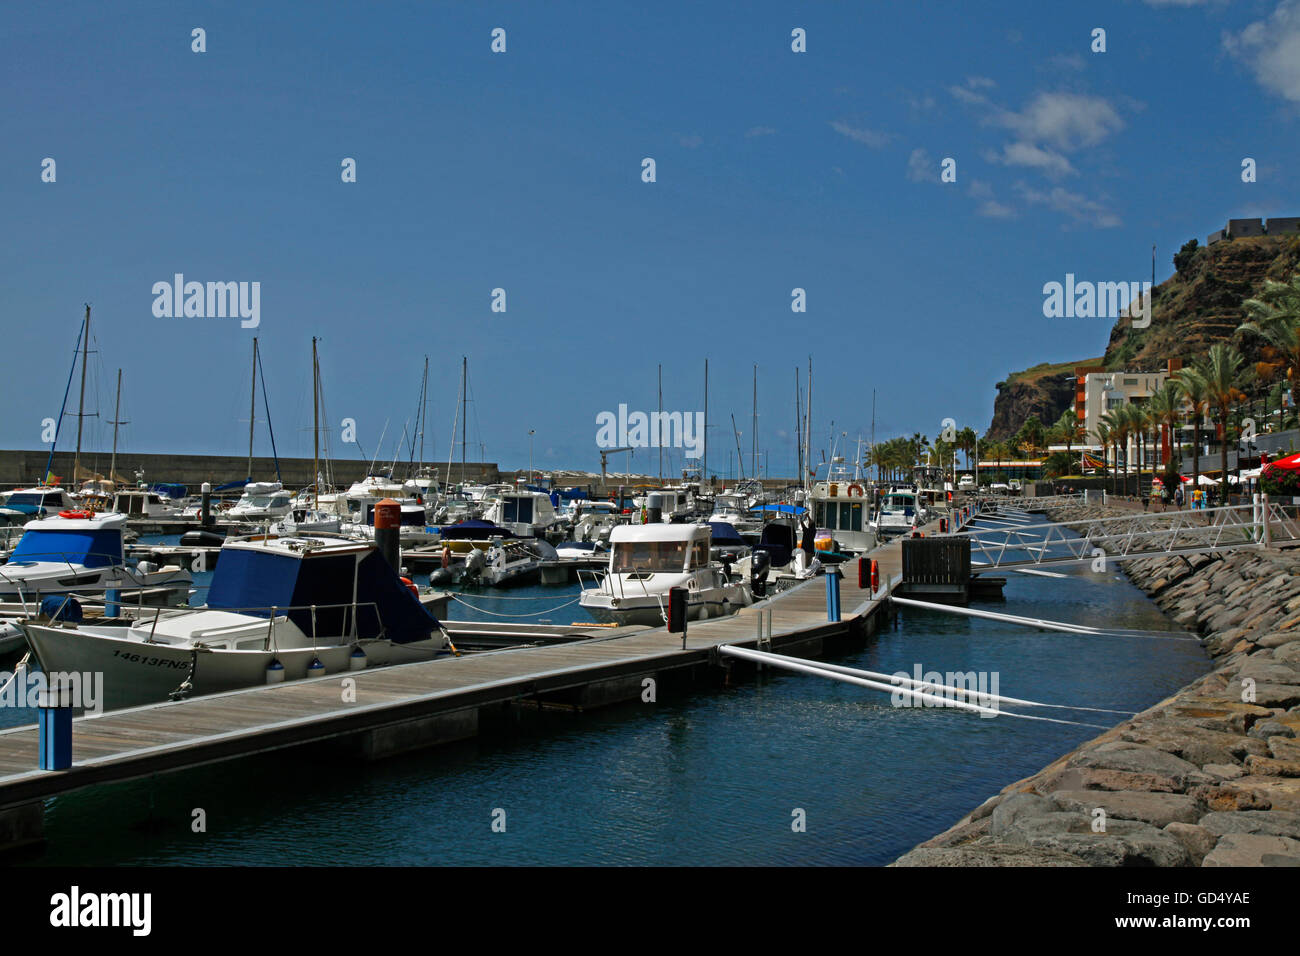 La pêche et le port de plaisance de Calheta, île de Madère, Portugal Banque D'Images